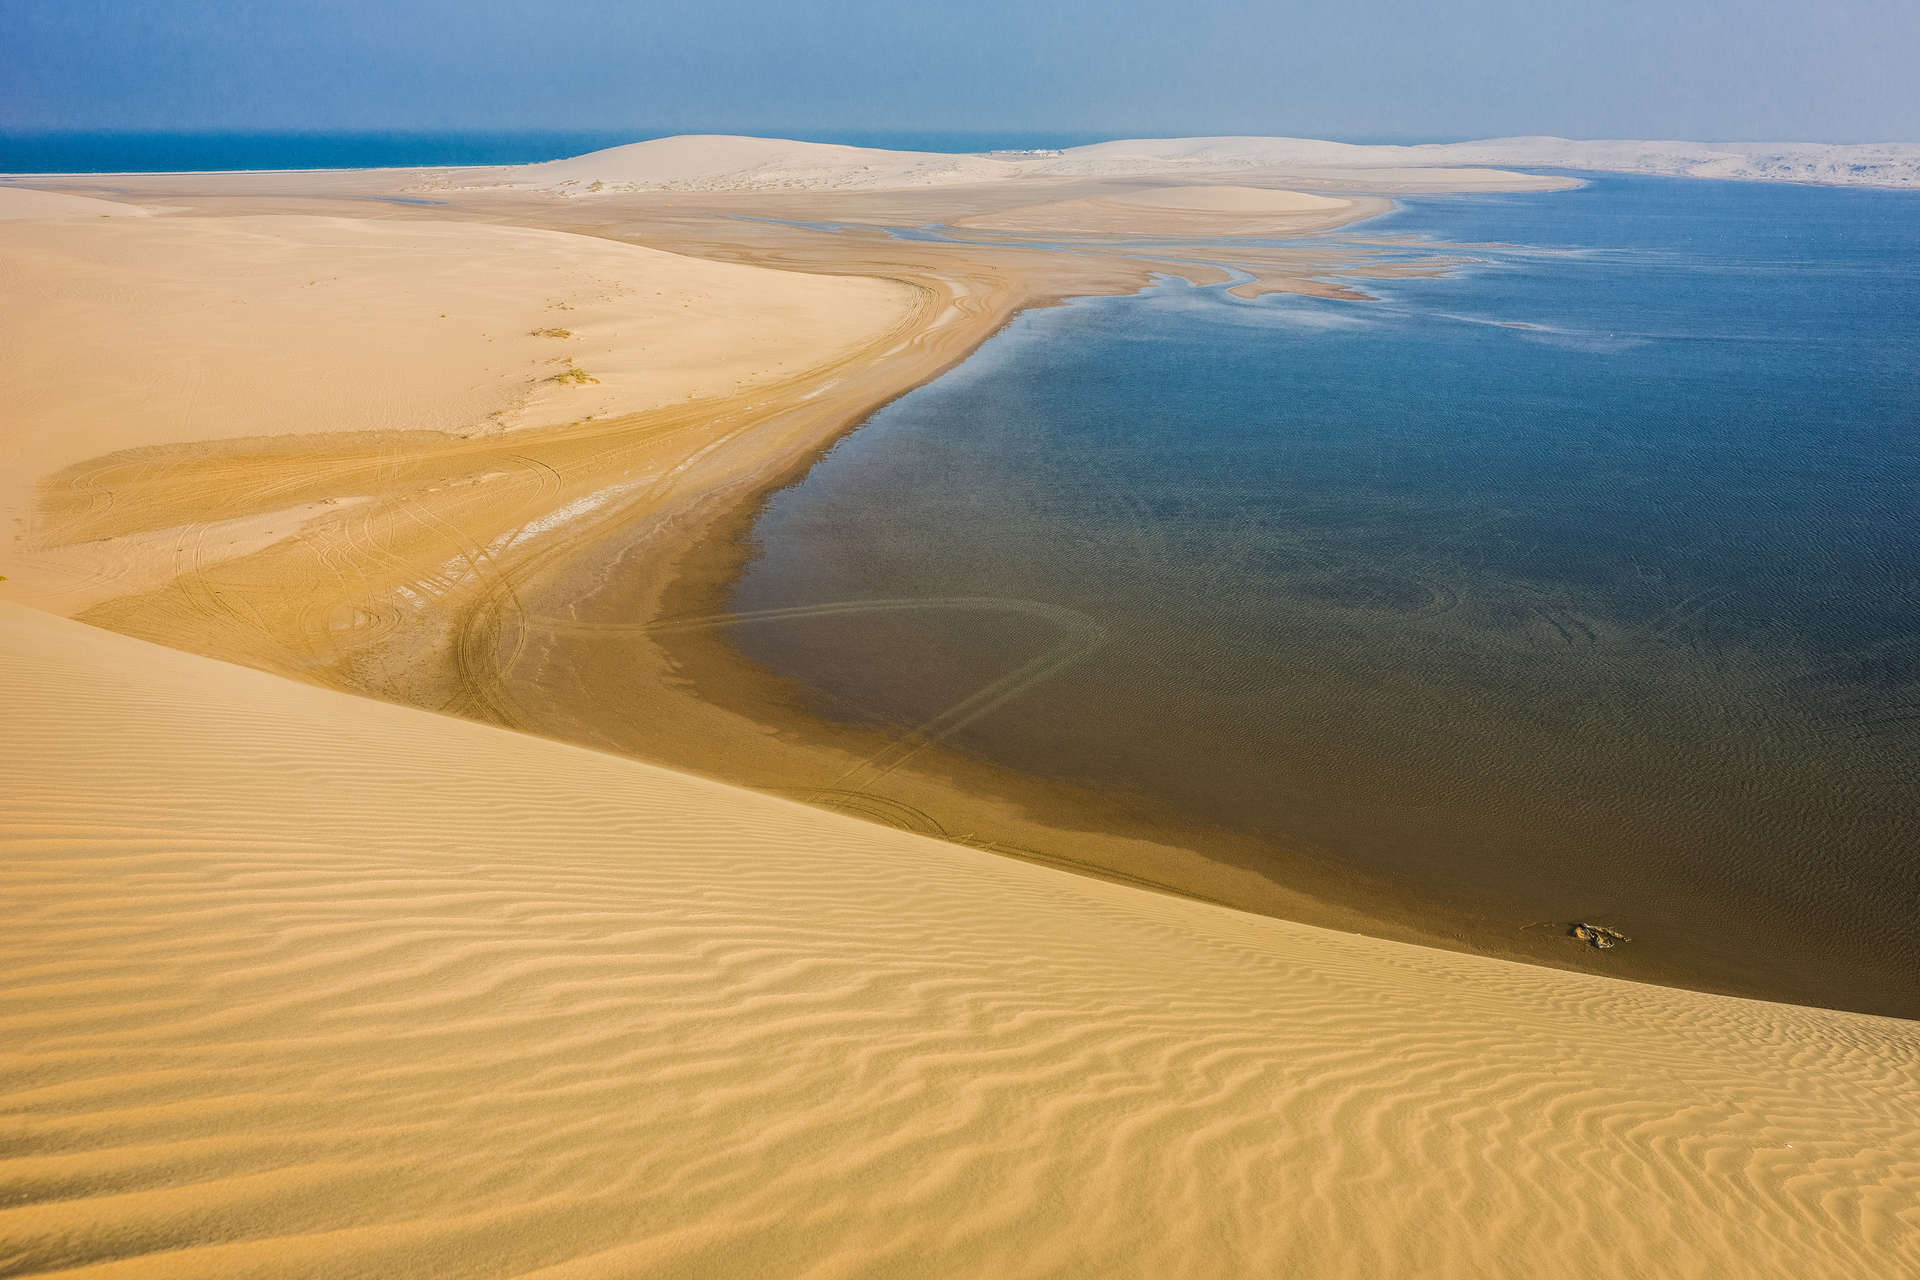 خور العديد، البحر الداخلي، هو خليج مالح صغير في أسفل شبة جزيرة قطر